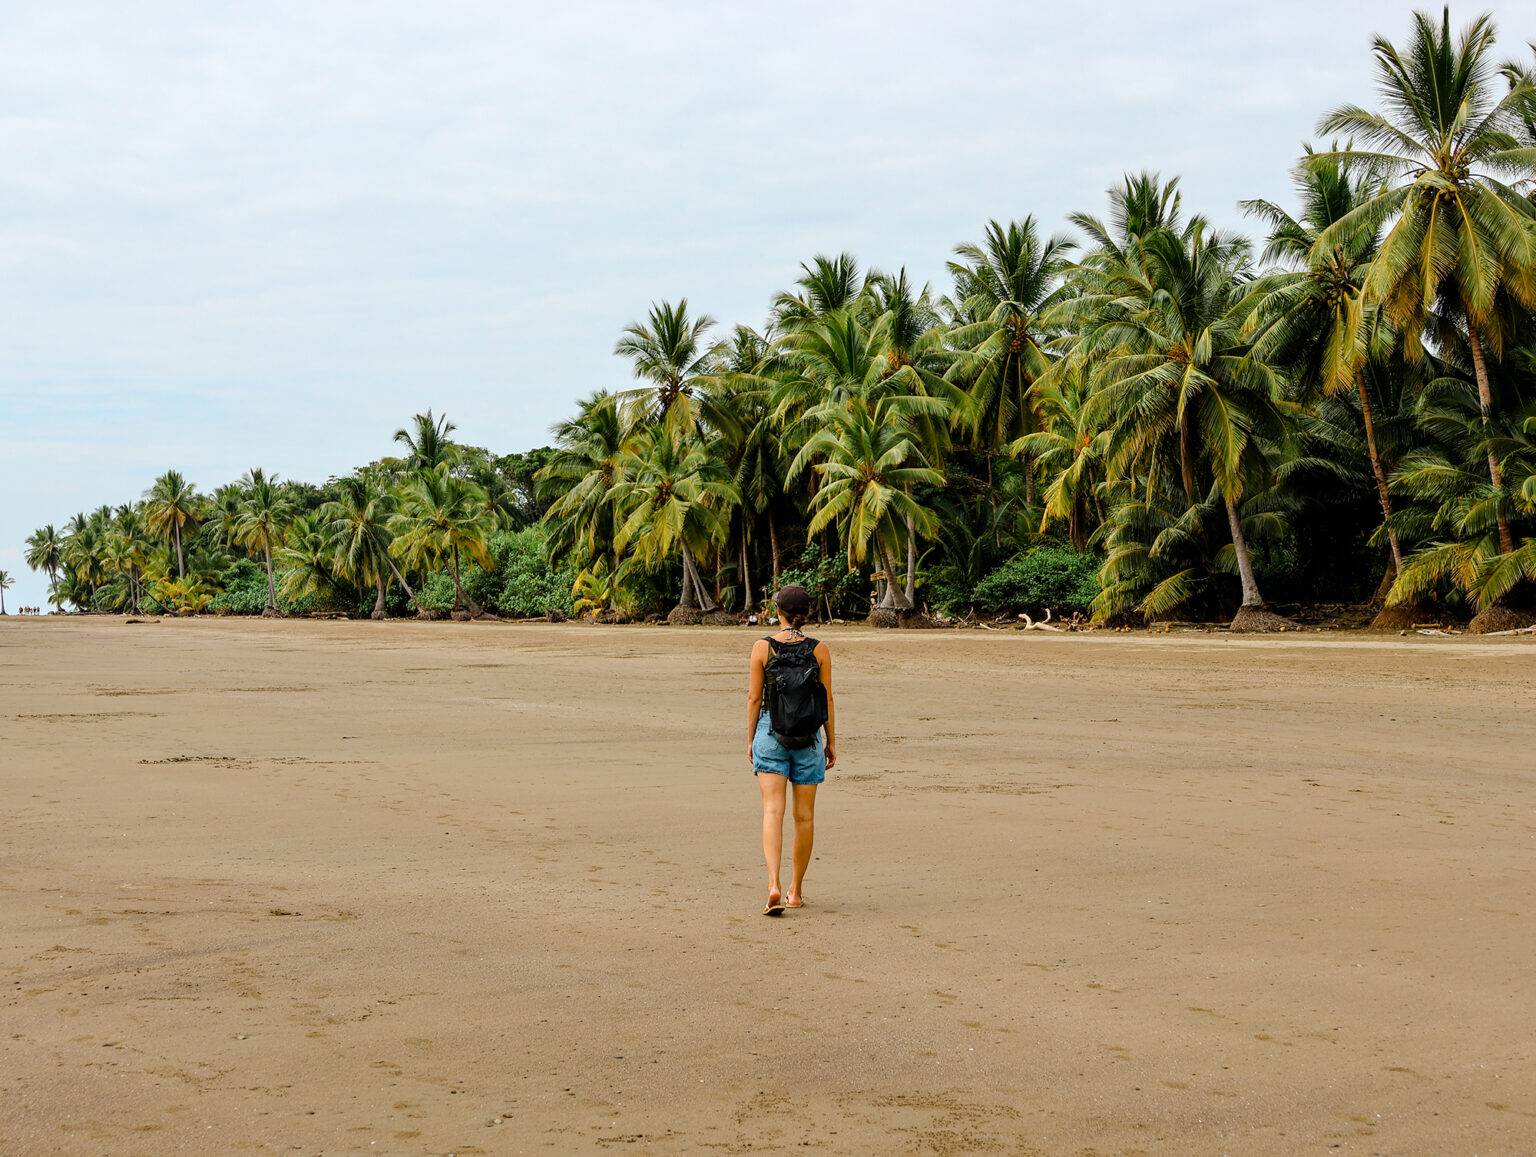 Hinter dem breiten Sandstrand reihen sich Kokosnusspalmen aneinander.